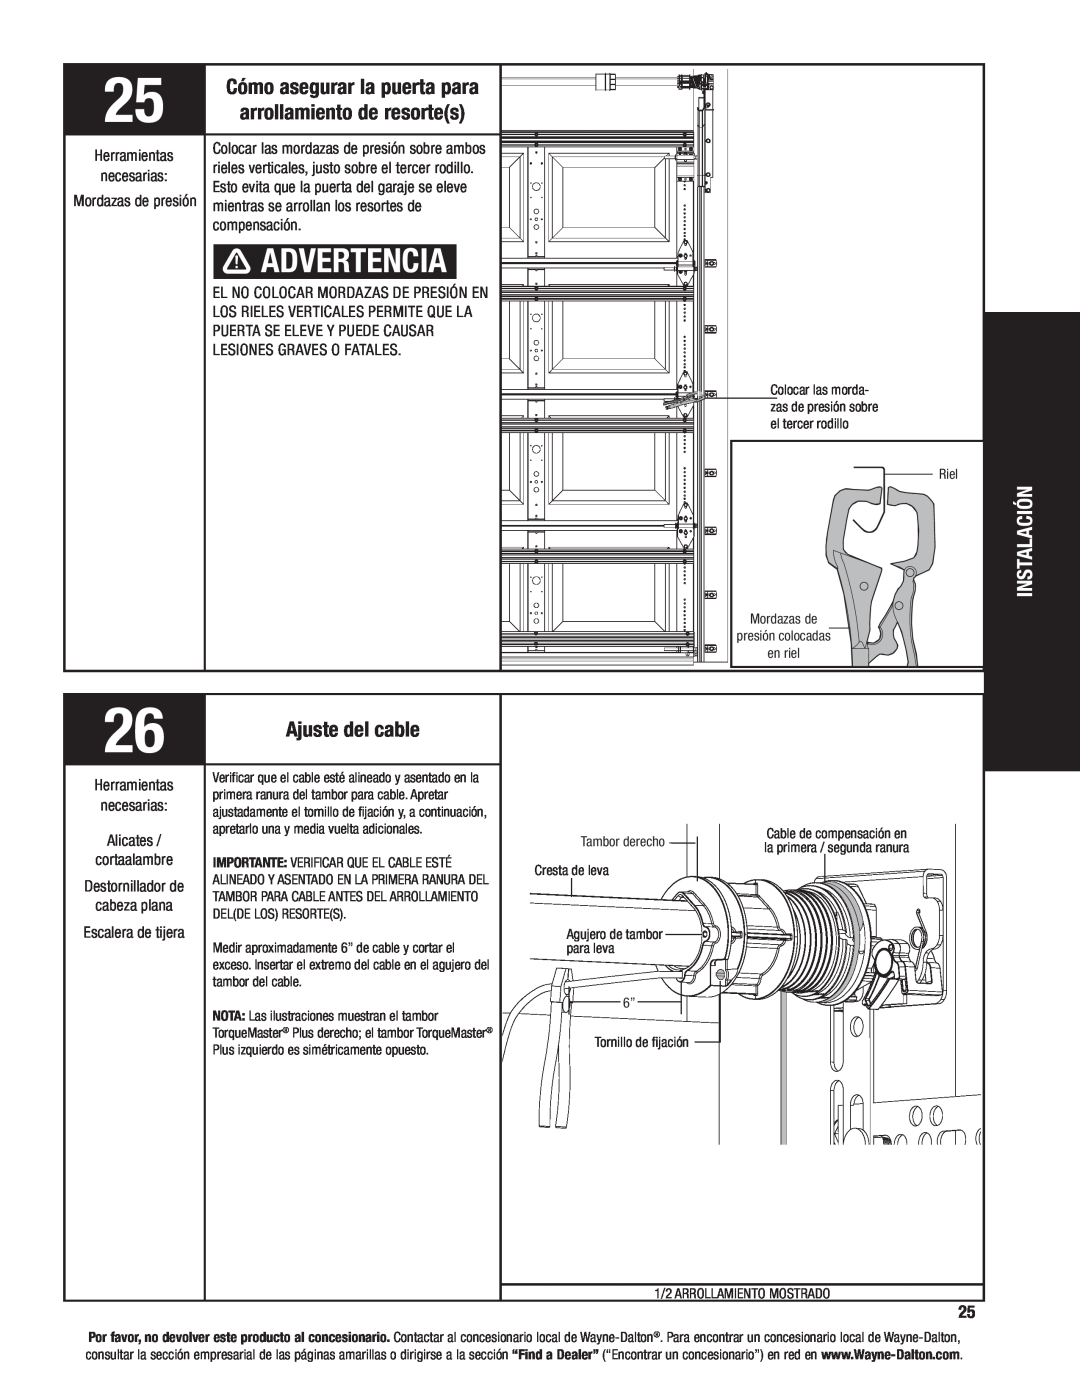 Wayne-Dalton 8100 Advertencia, Instalación, Cómo asegurar la puerta para, rieles verticales, justo sobre el tercer rodillo 